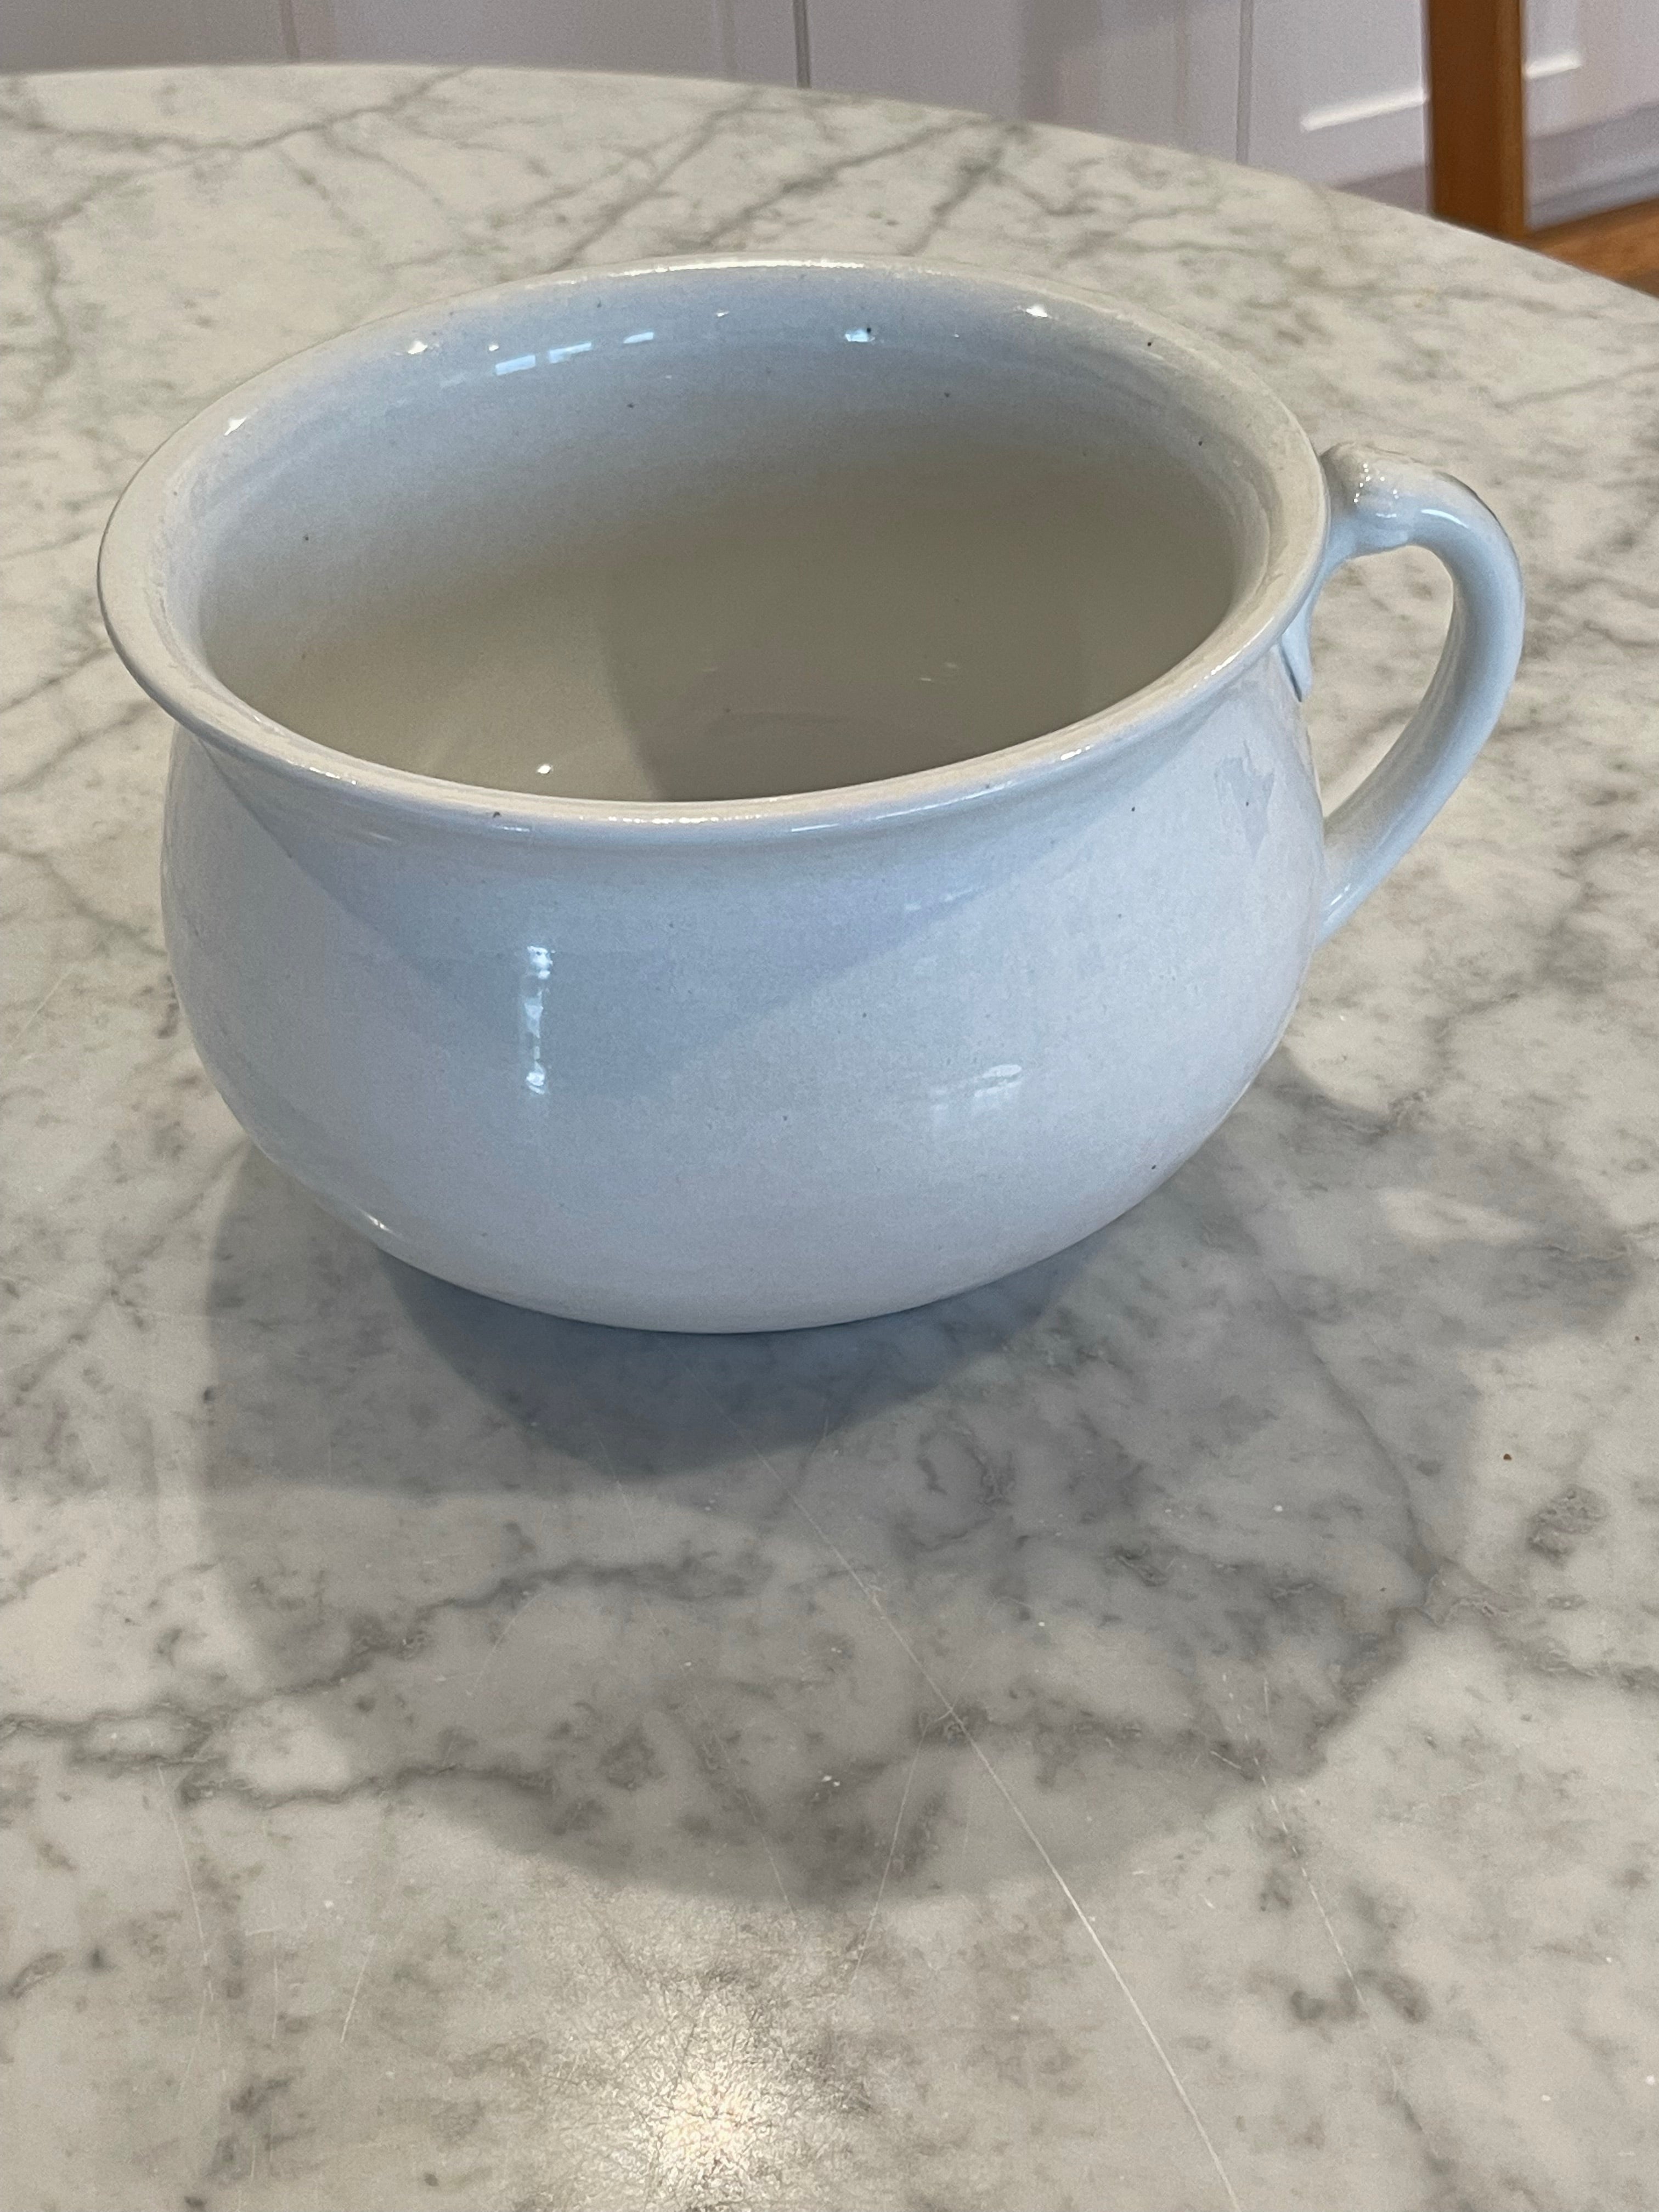 The SP Co Porcelain White Pot